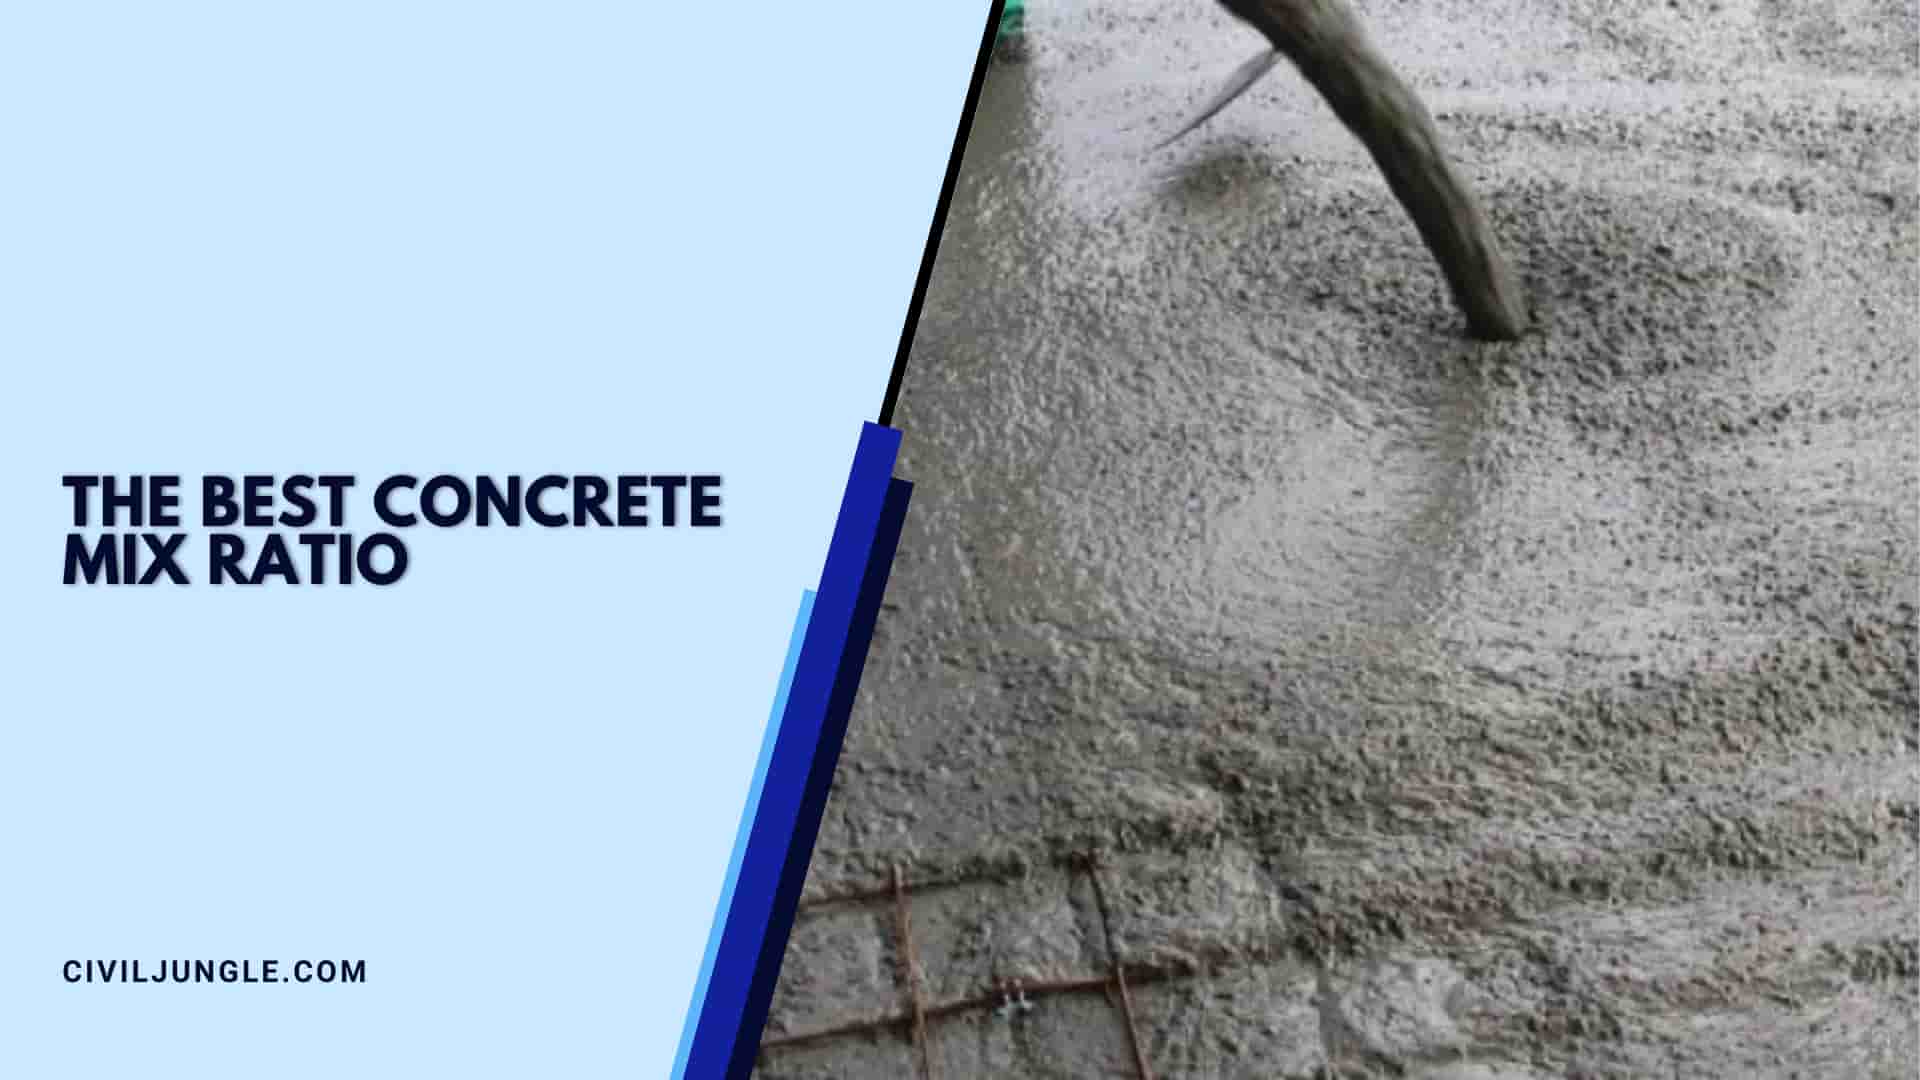 The Best Concrete Mix Ratio